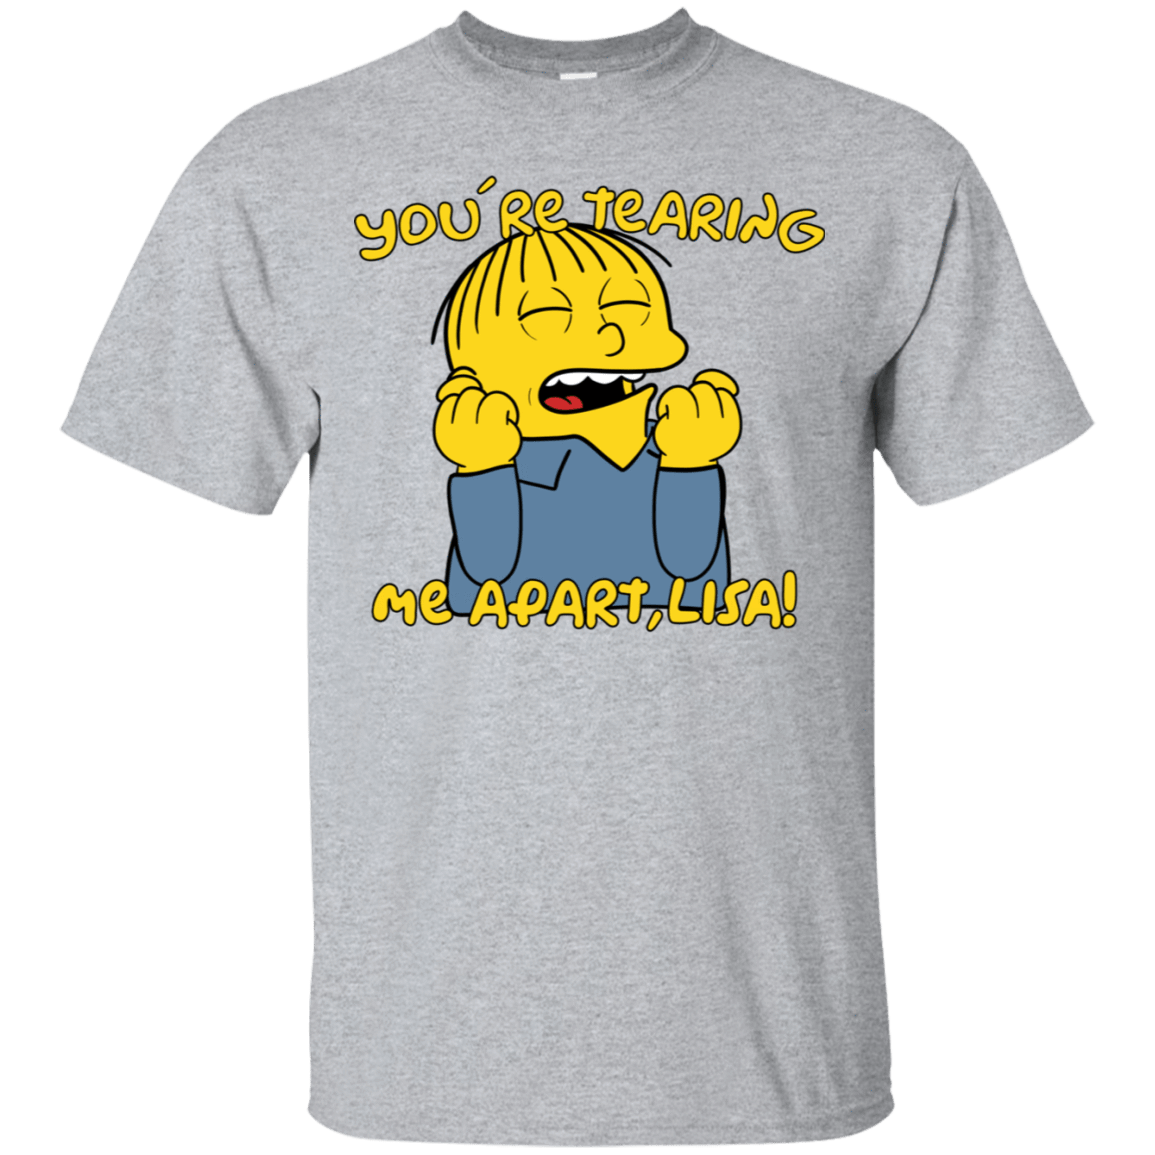 T-Shirts Sport Grey / S Ralph Wiseau T-Shirt